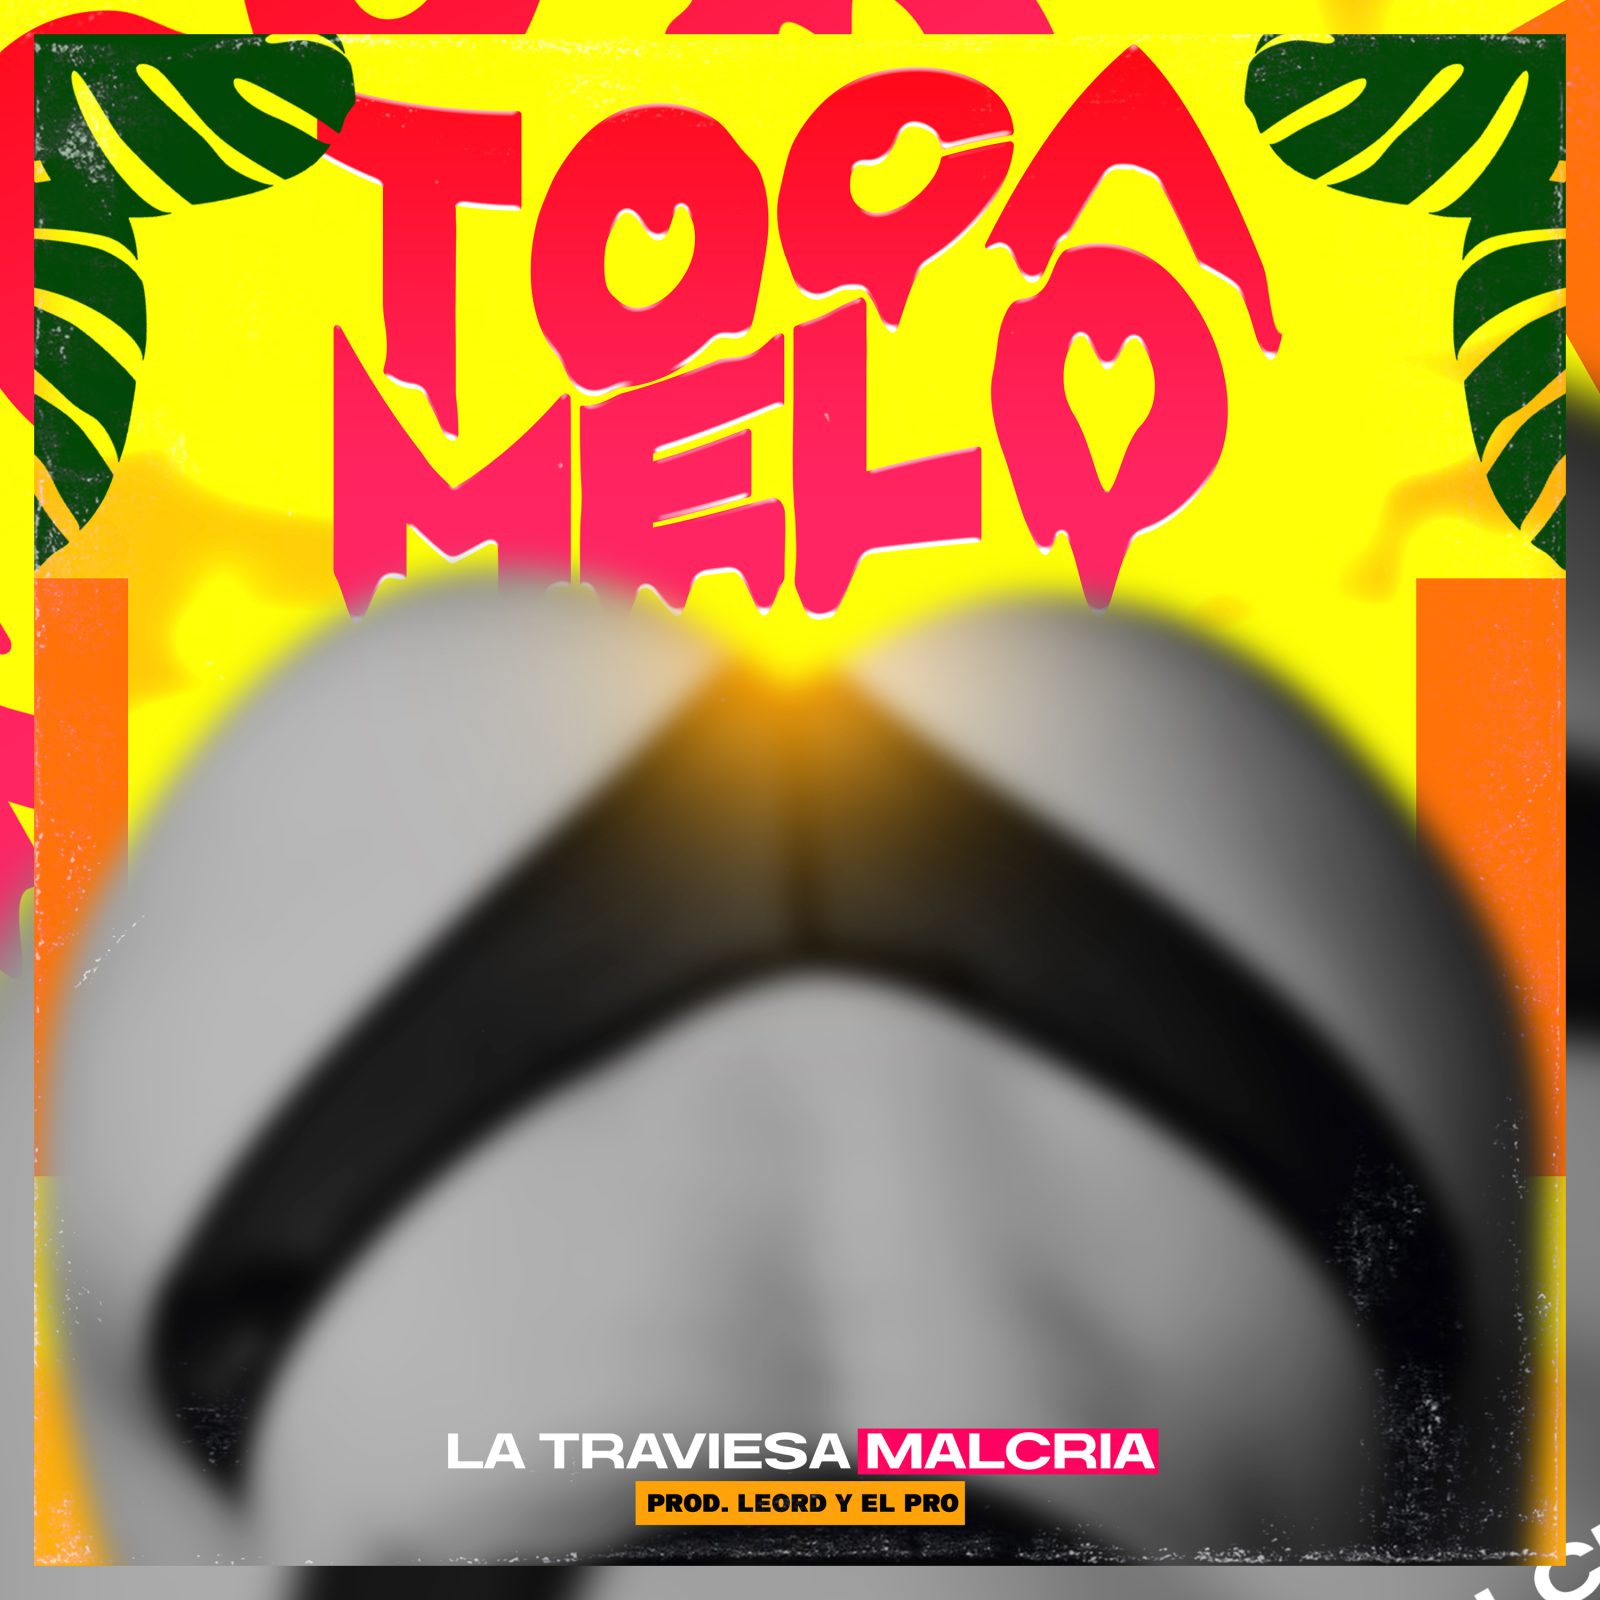 La Traviesa Malcria - Toca Melo (Prod By El Pro & Leo RD)